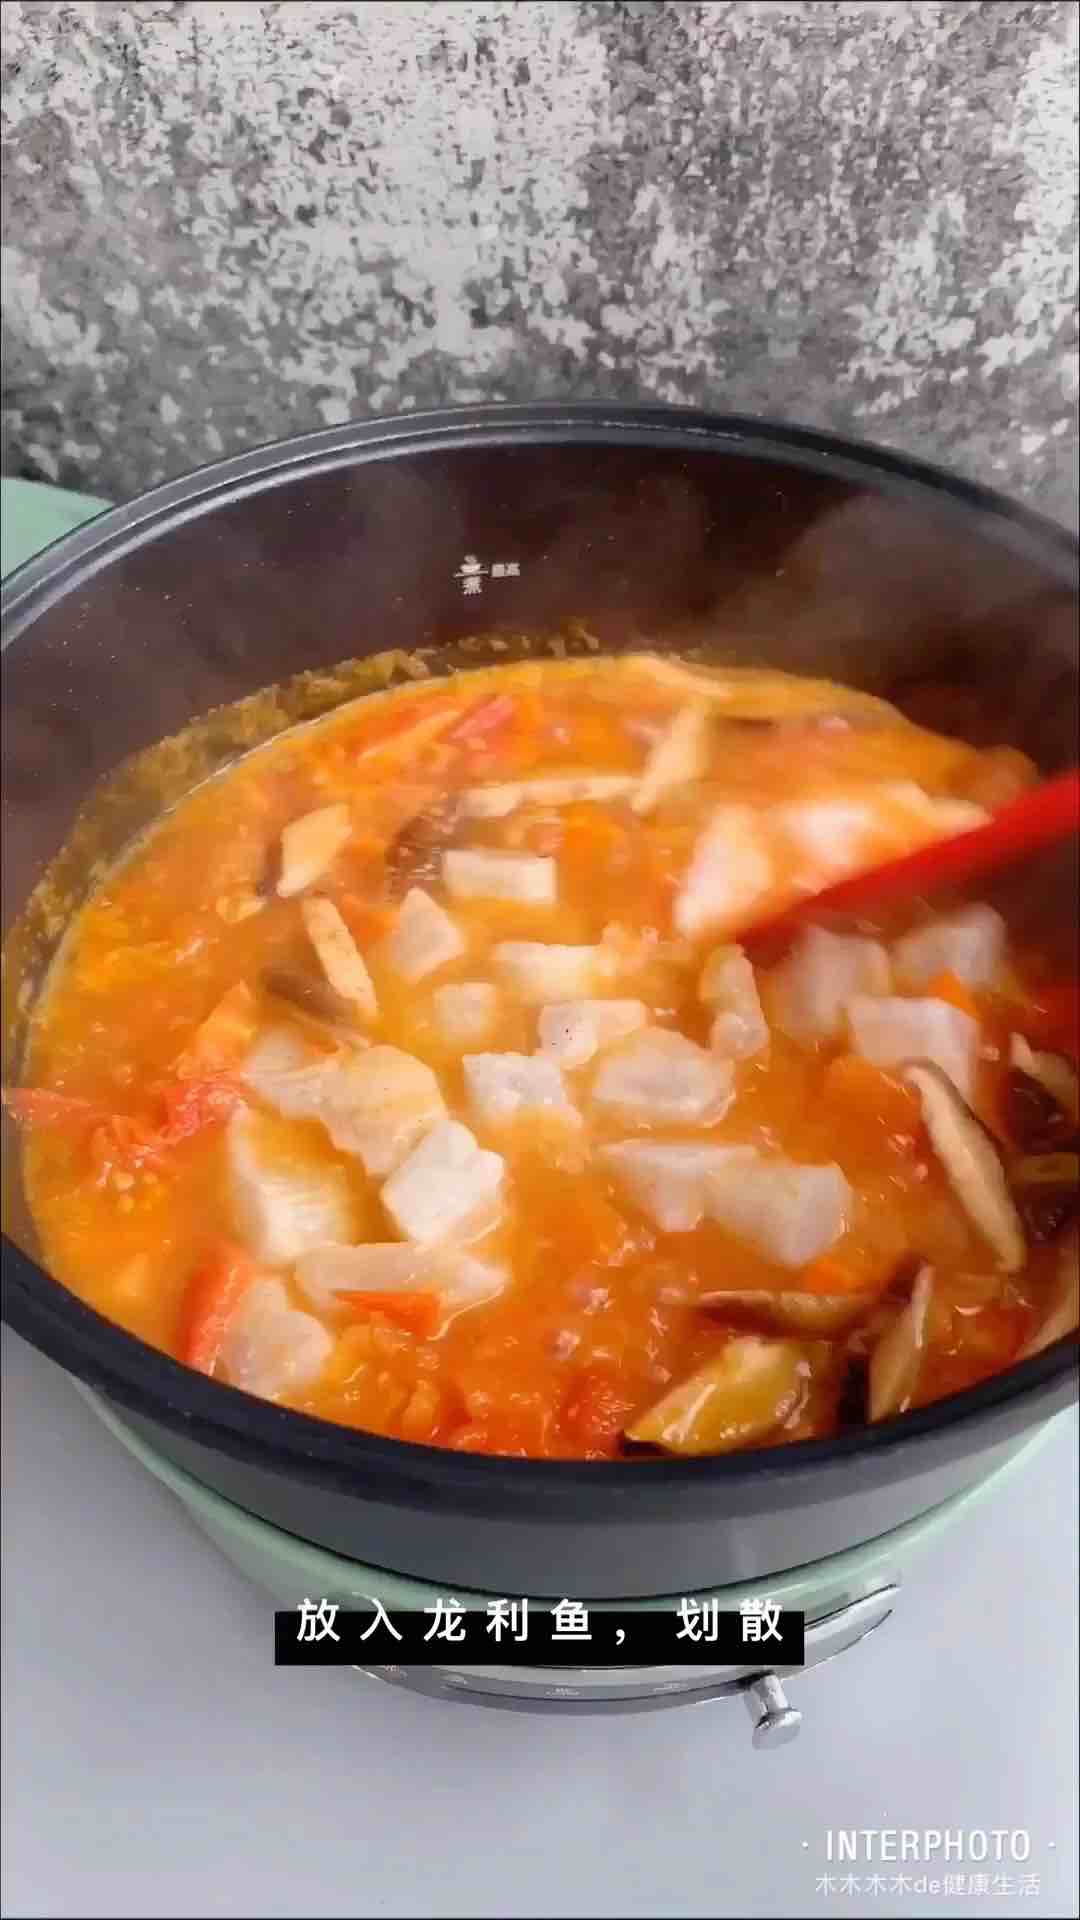 Tomato Long Li Fish Rice Bowl recipe